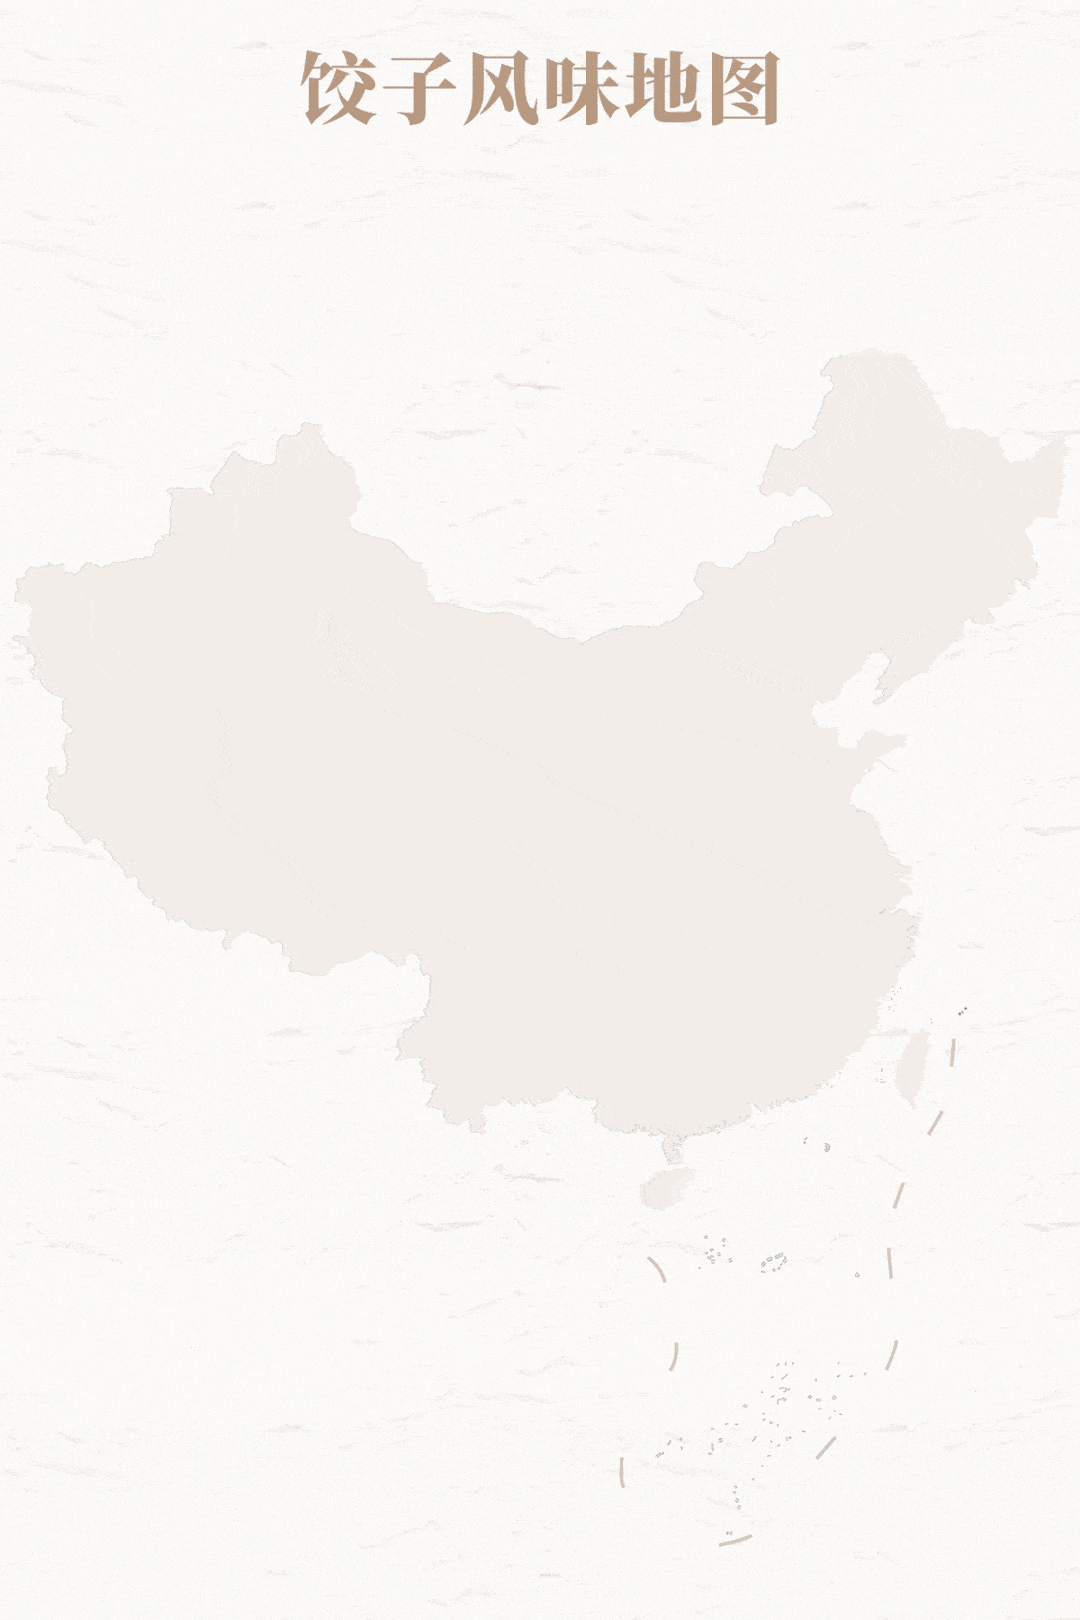 中国地图卡通图片素材图片